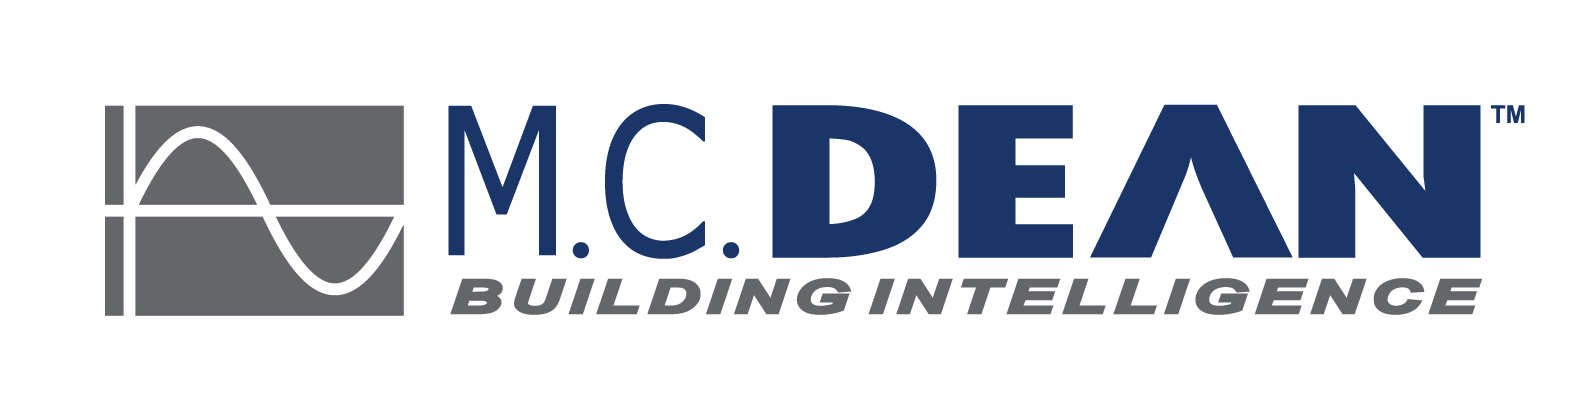 MCD Logo - MCD Logo - Color High Res Transparent Background 2013 (4) - IAEE